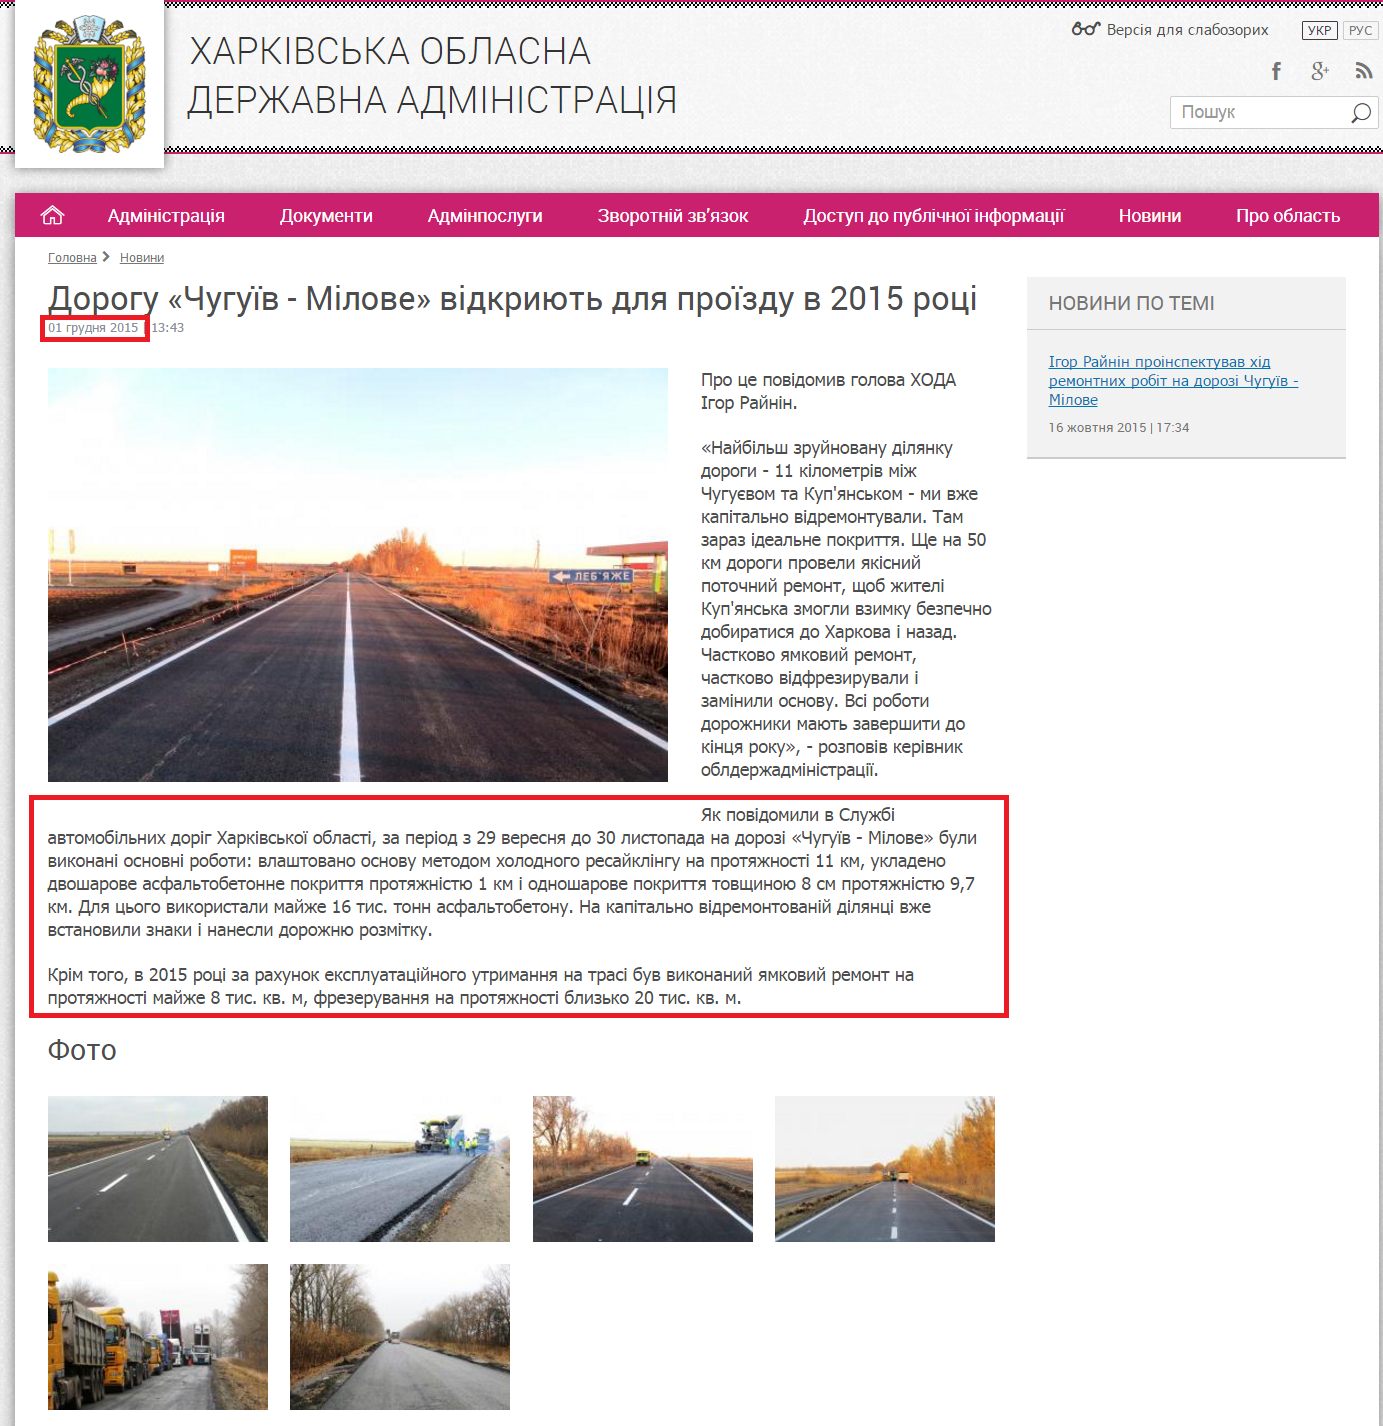 http://kharkivoda.gov.ua/news/77724